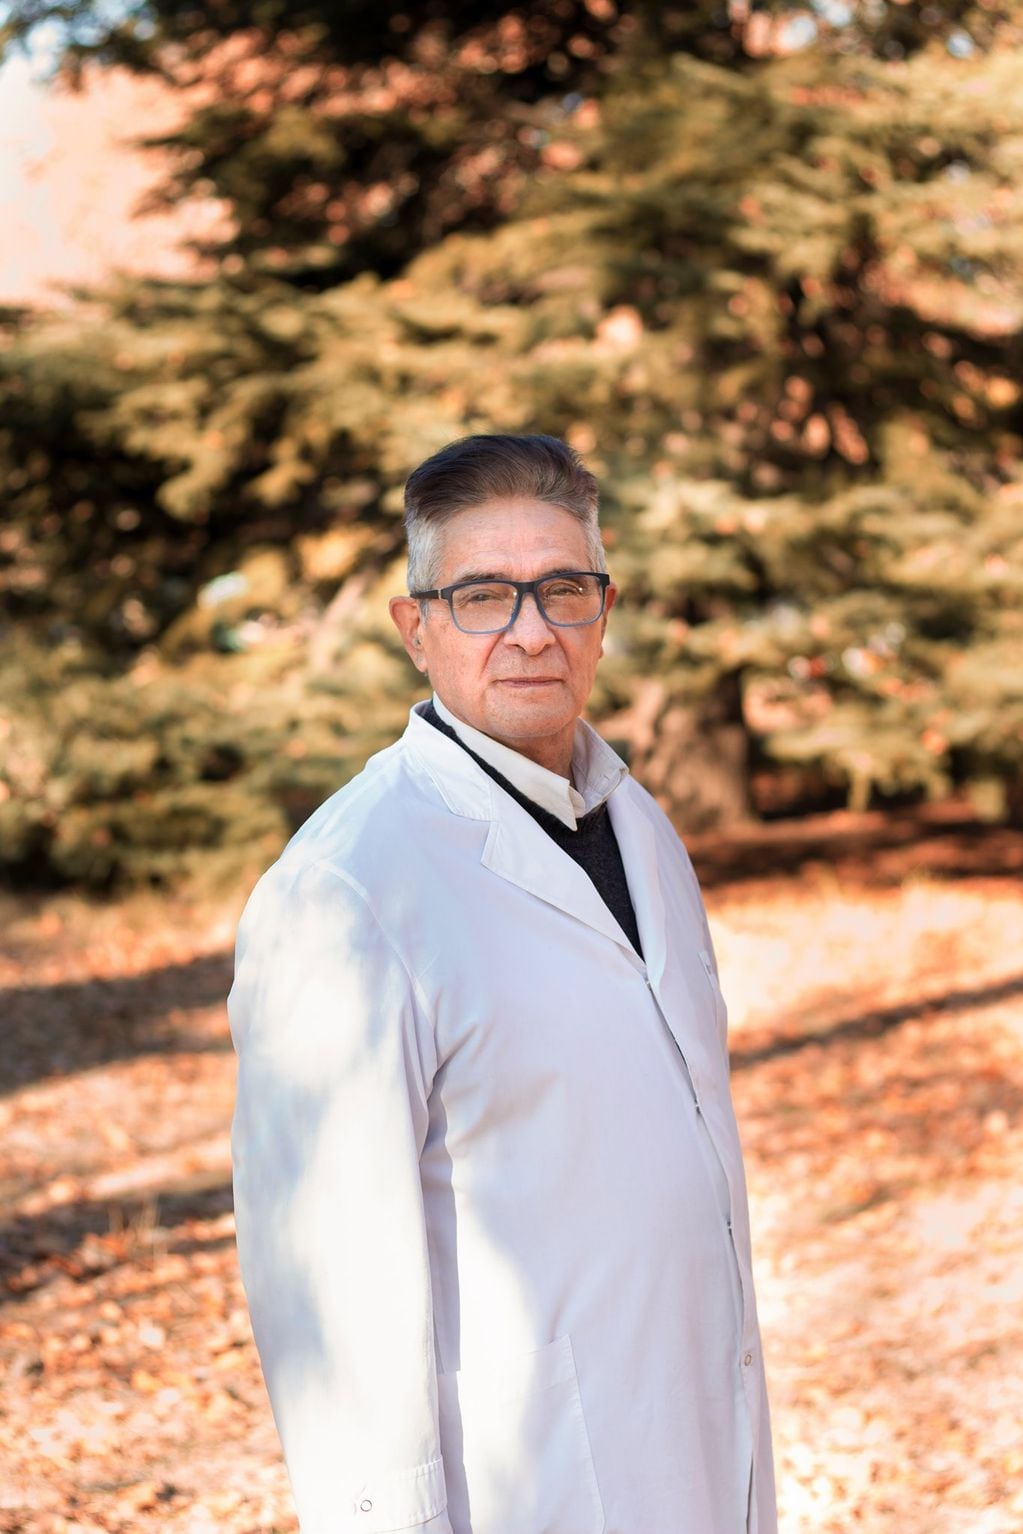 El médico Enrique Riquelme ya comenzó con su campaña en las redes sociales, y es casi un hecho que será el representante Compromiso Federal en Mendoza.